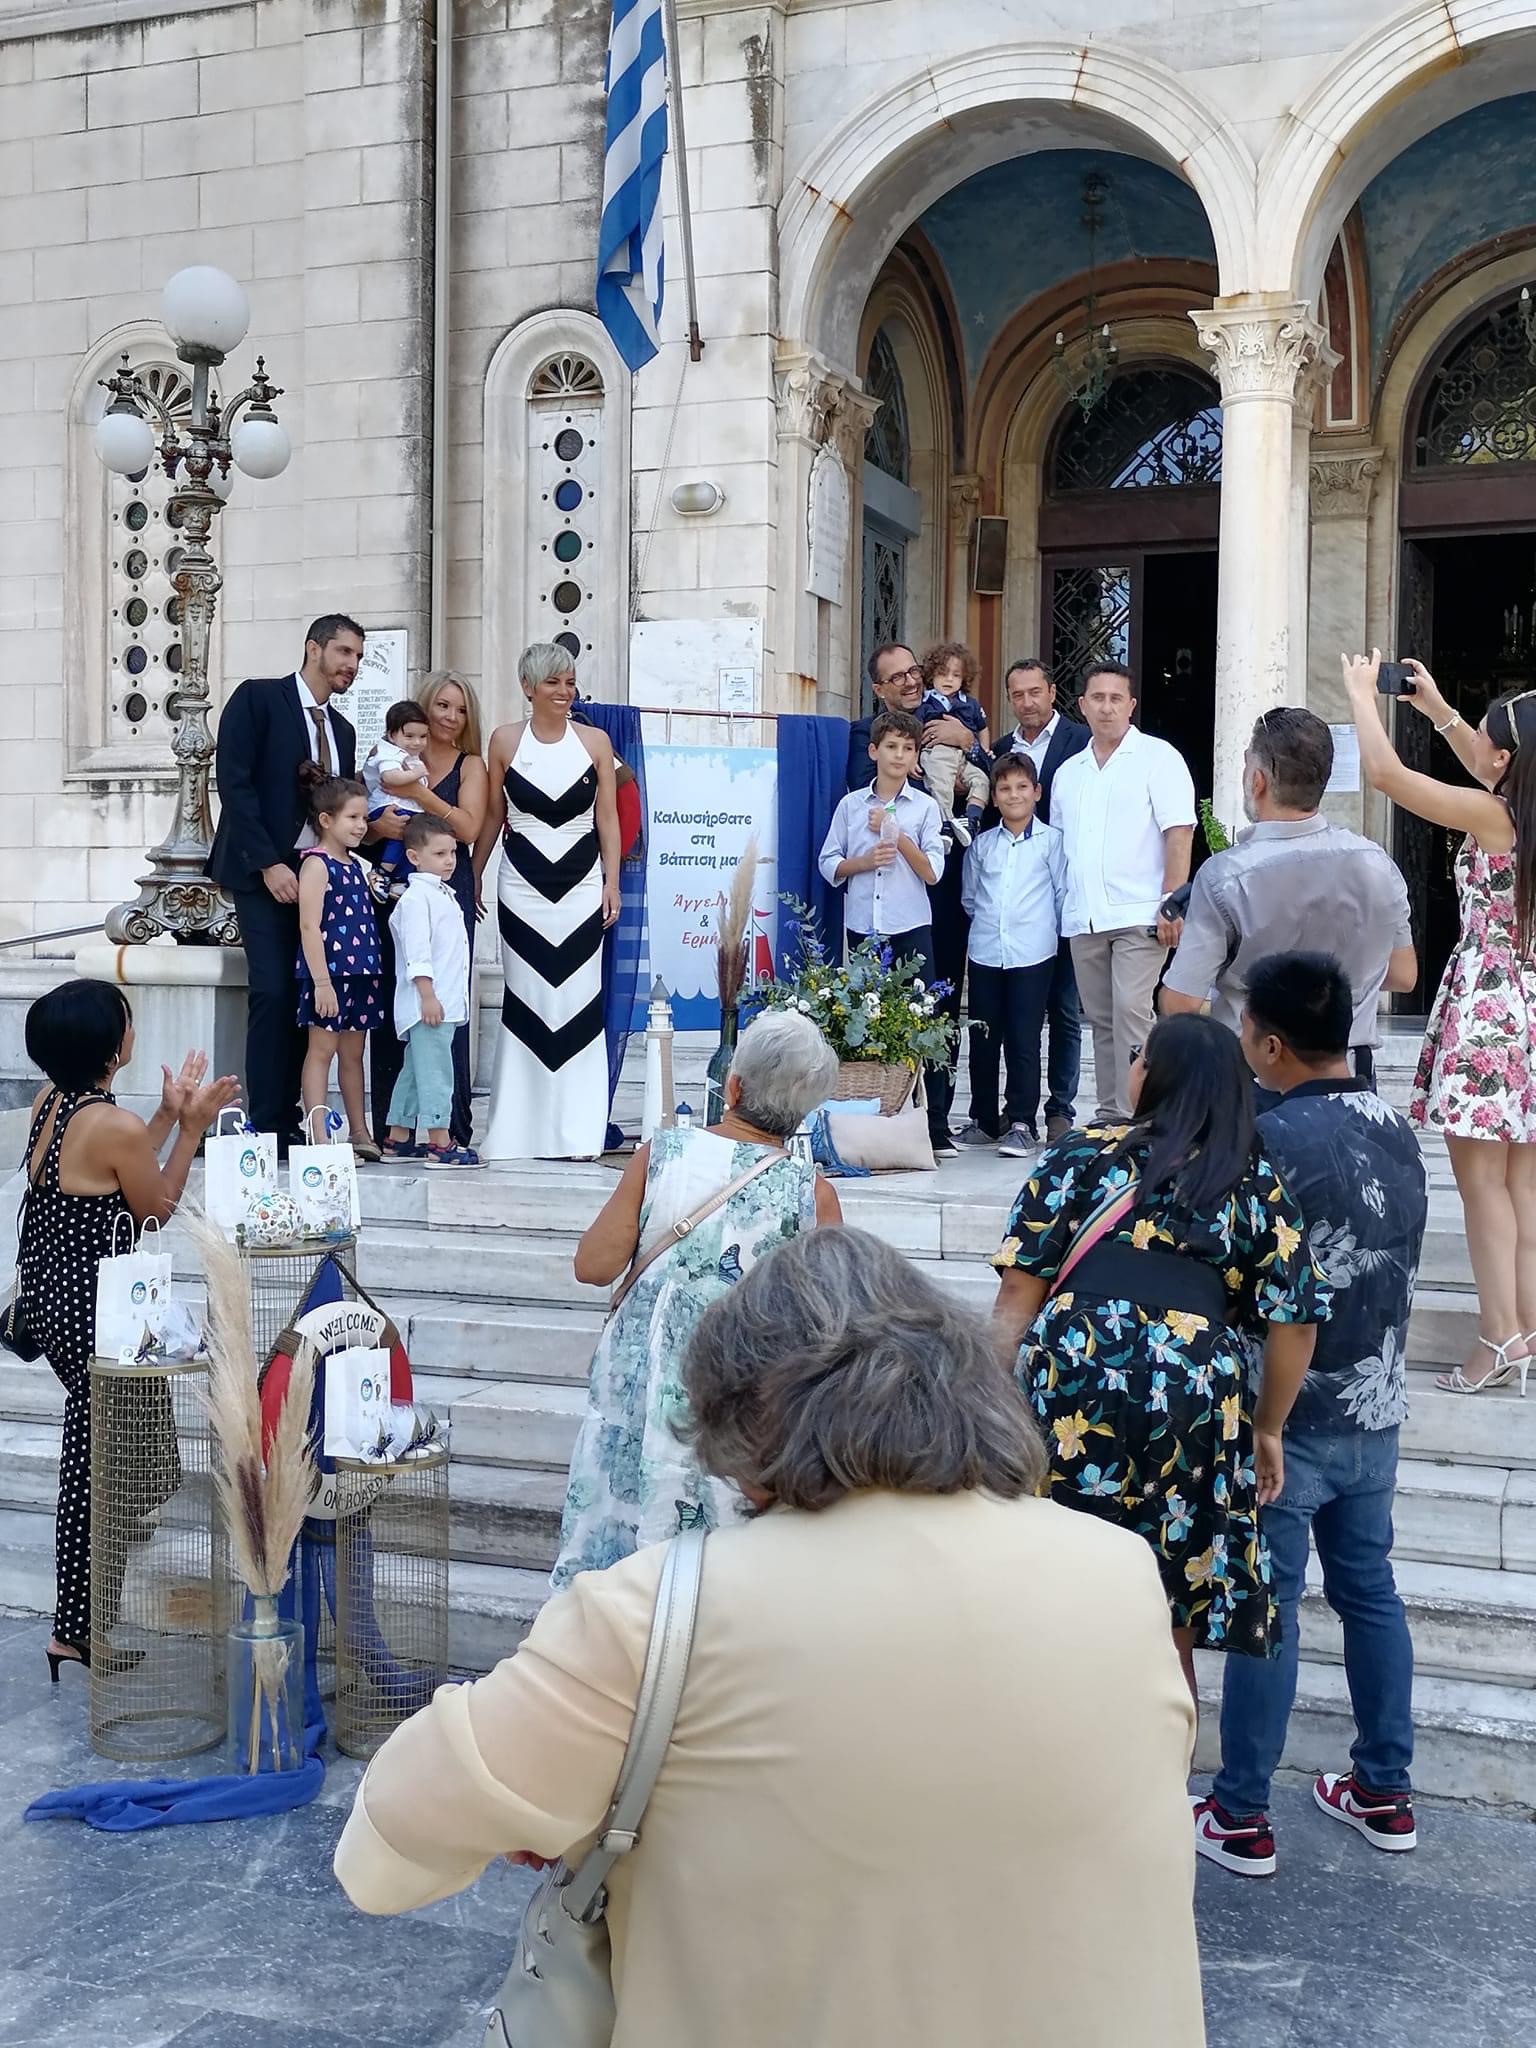 Εύβοια: Στην Χαλκίδα βάφτισαν τα παιδιά τους Σοφία Νικολάου και Κωνσταντίνος Δαυλός – Ποιοι παρευρέθηκαν (pics)